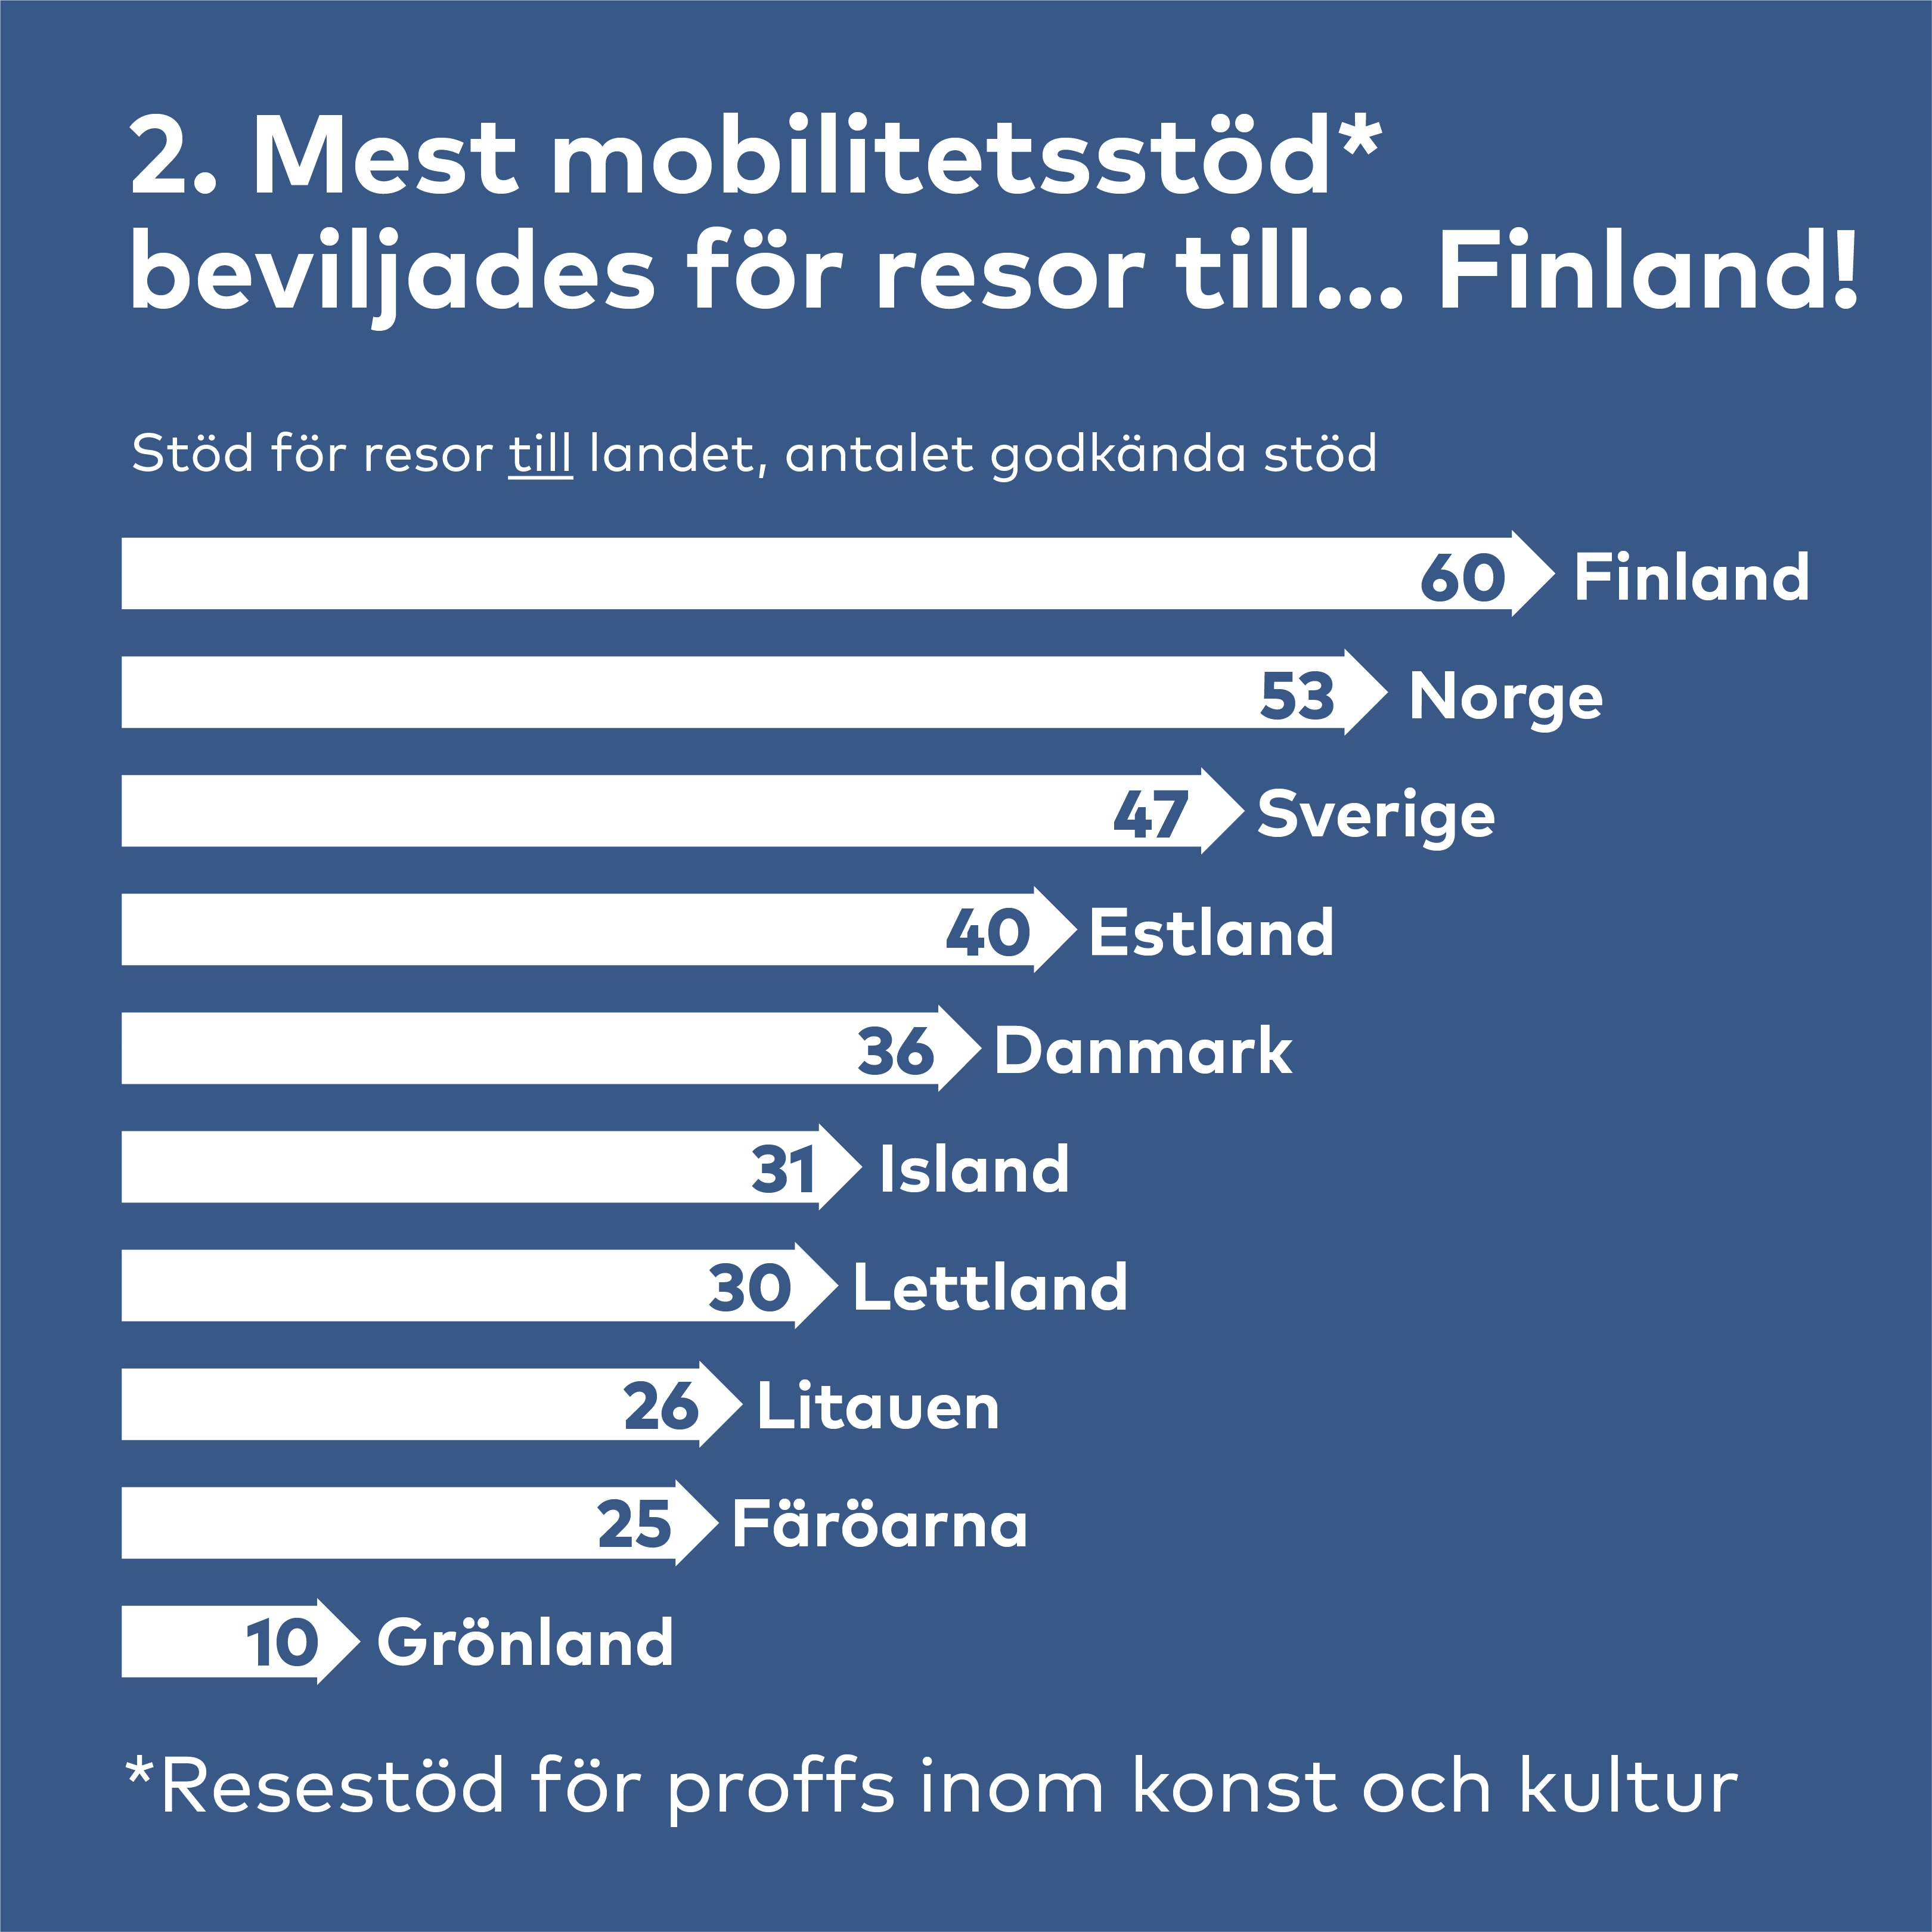 Finland, Norge,  Sverige och Estland de mest pupulära destinationerna hos mobilitetsstödmottagarna. 